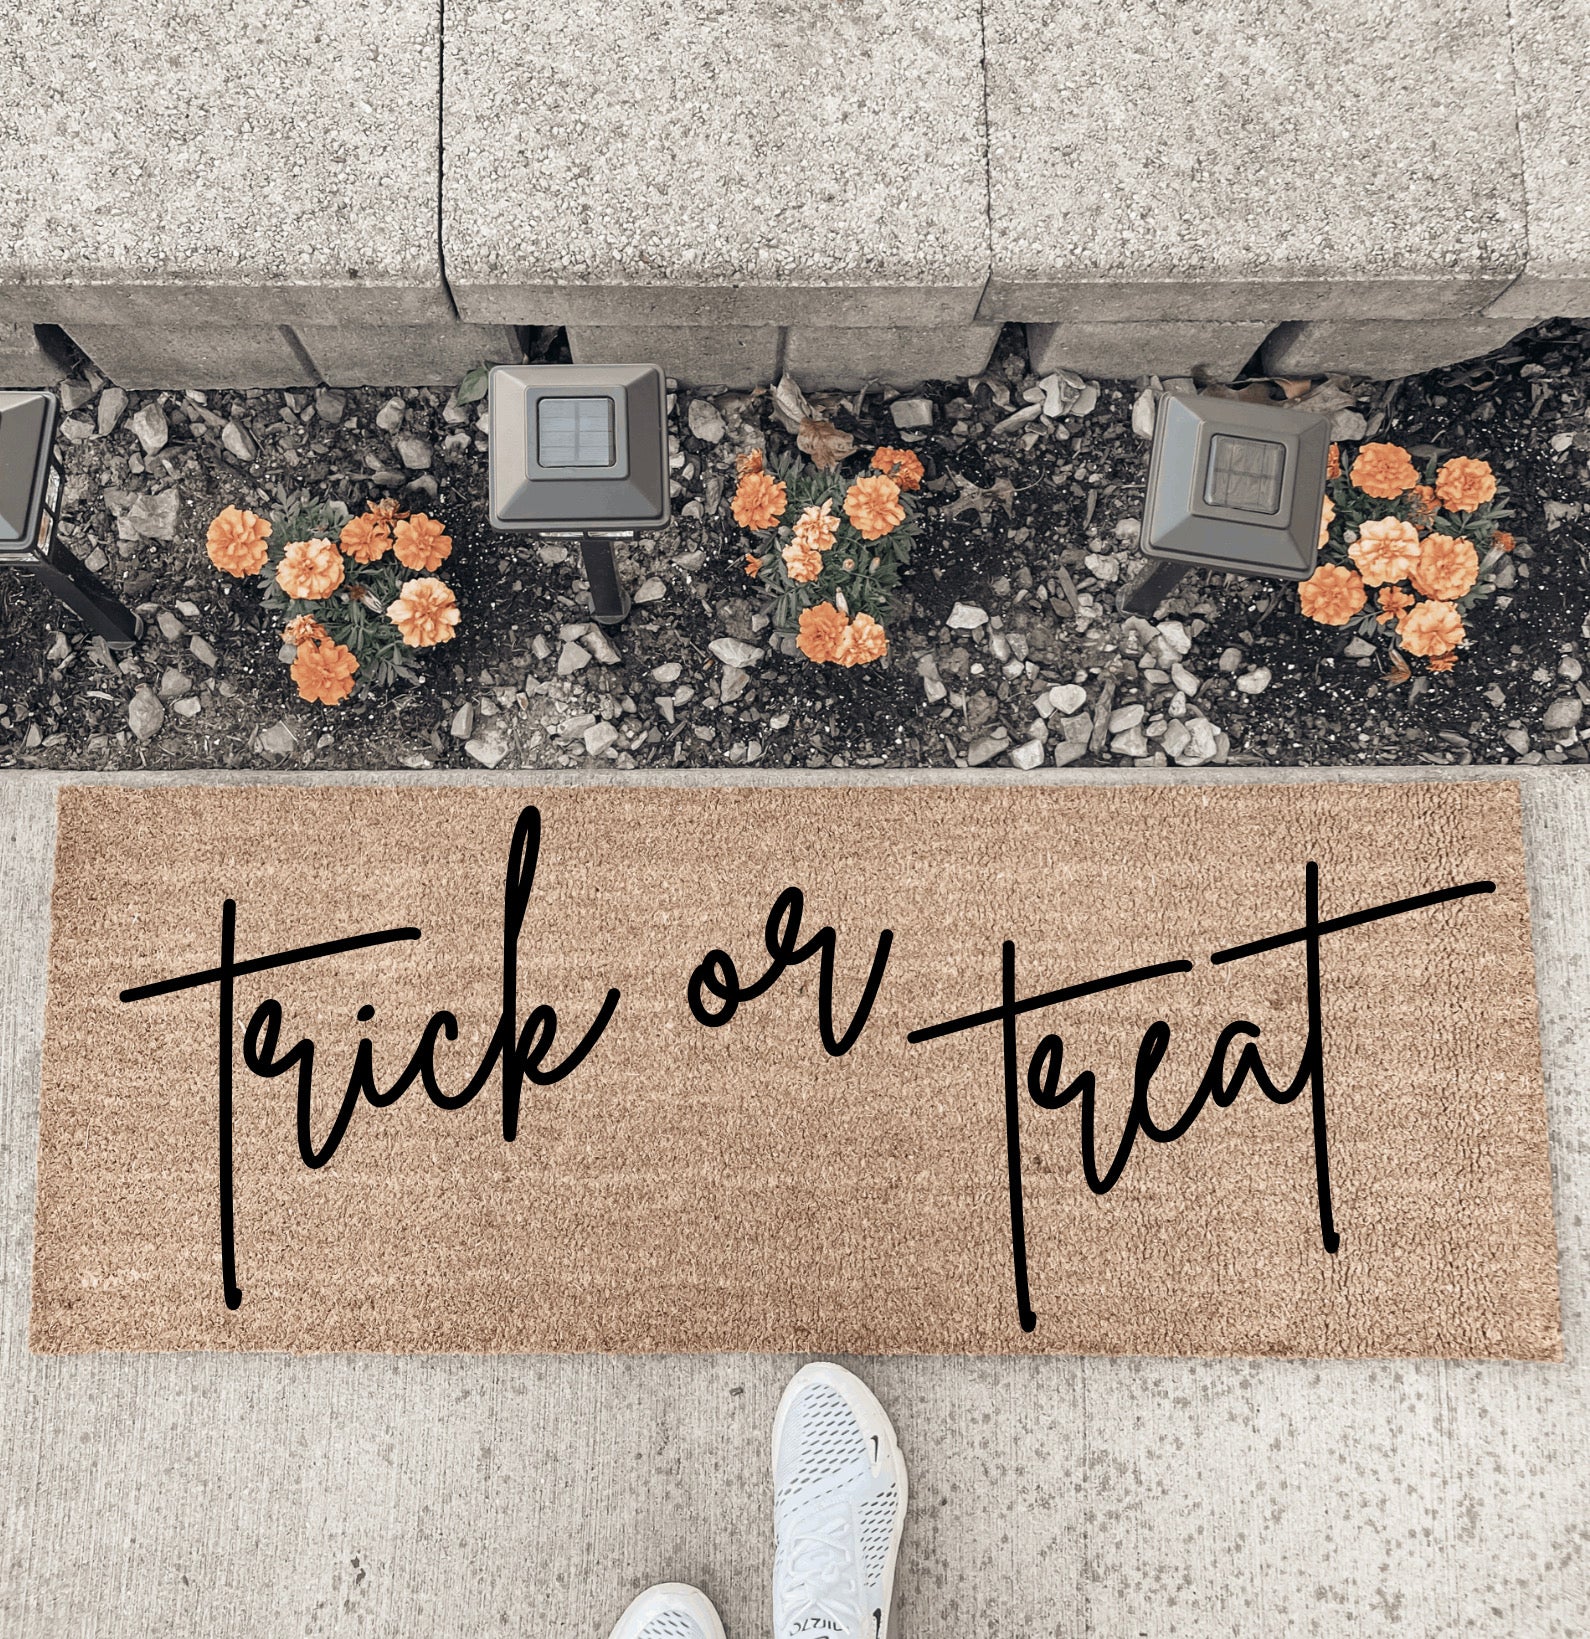 Trick Or Treat - Double Door Doormat